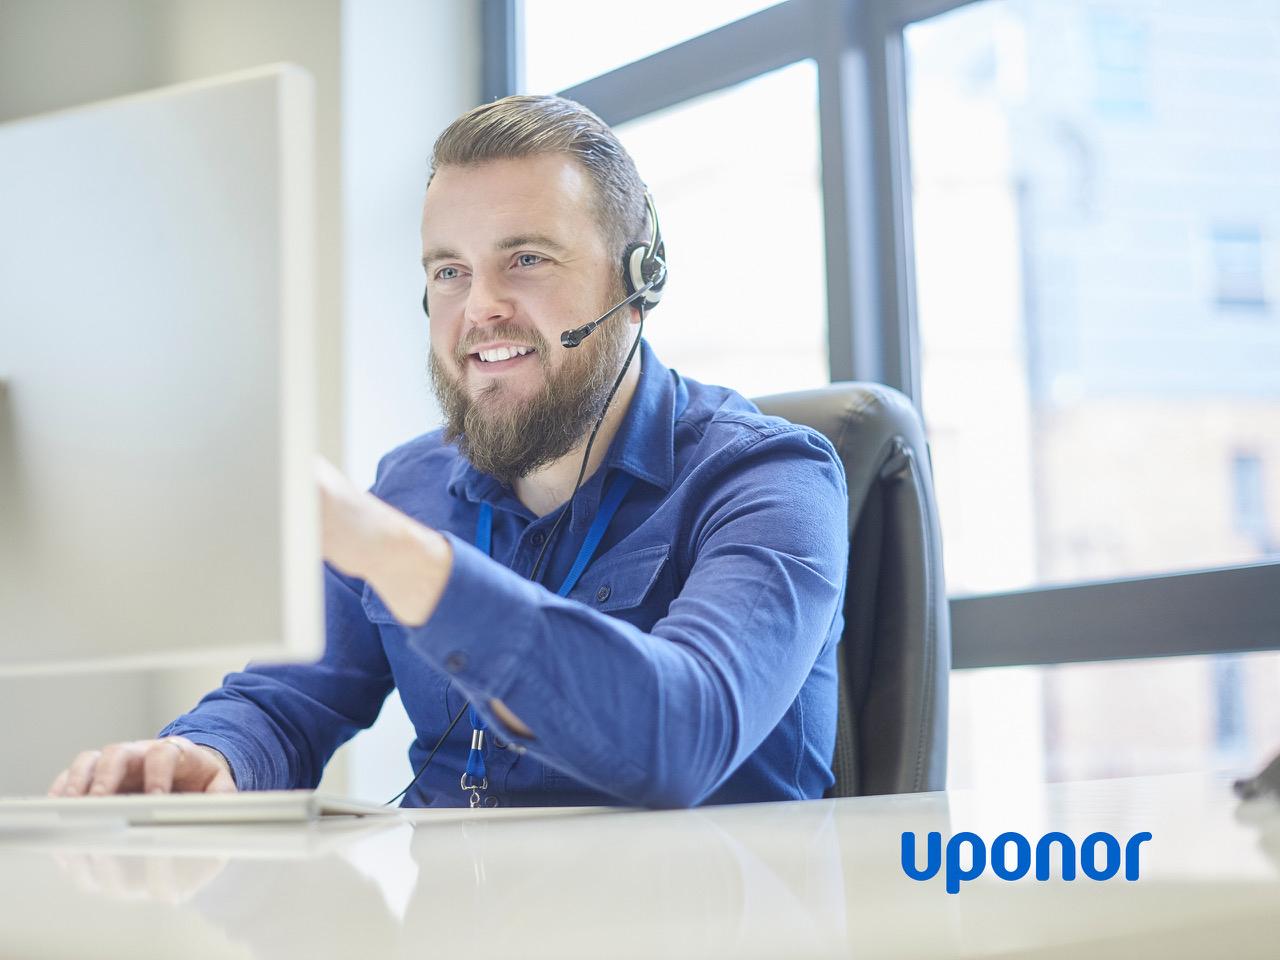 Uponor bietet maßgeschneiderte Online-Schulungen für Fachplaner und -handwerker im SHK-Bereich – von Experten für Experten.